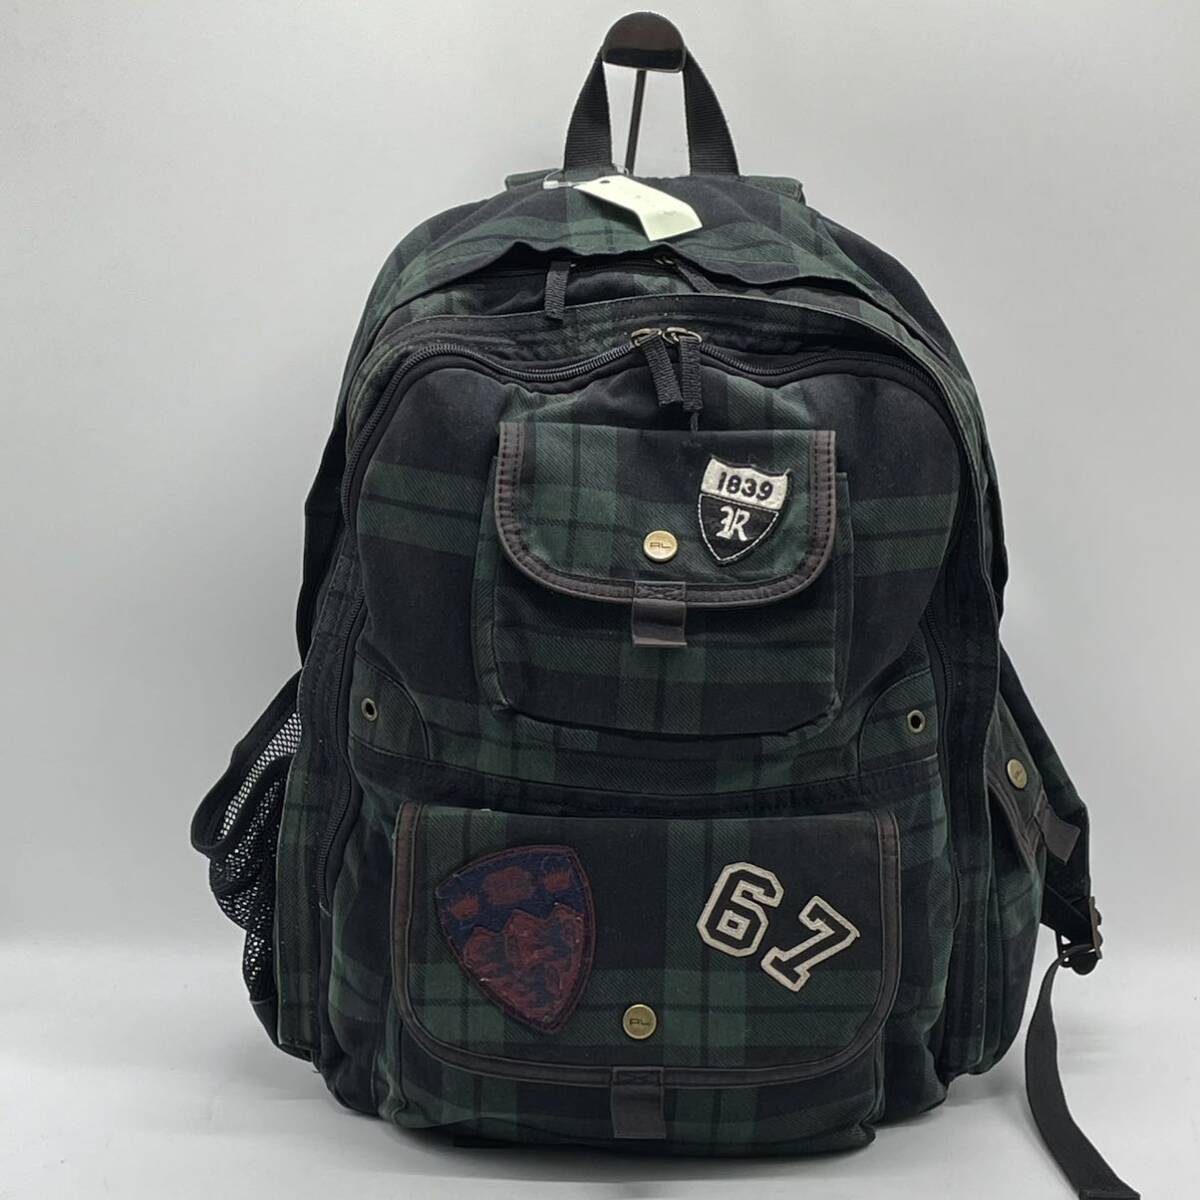 ⑧BN3978* RalphLauren Ralph Lauren rucksack backpack canvas green × dark green × multi check pattern 